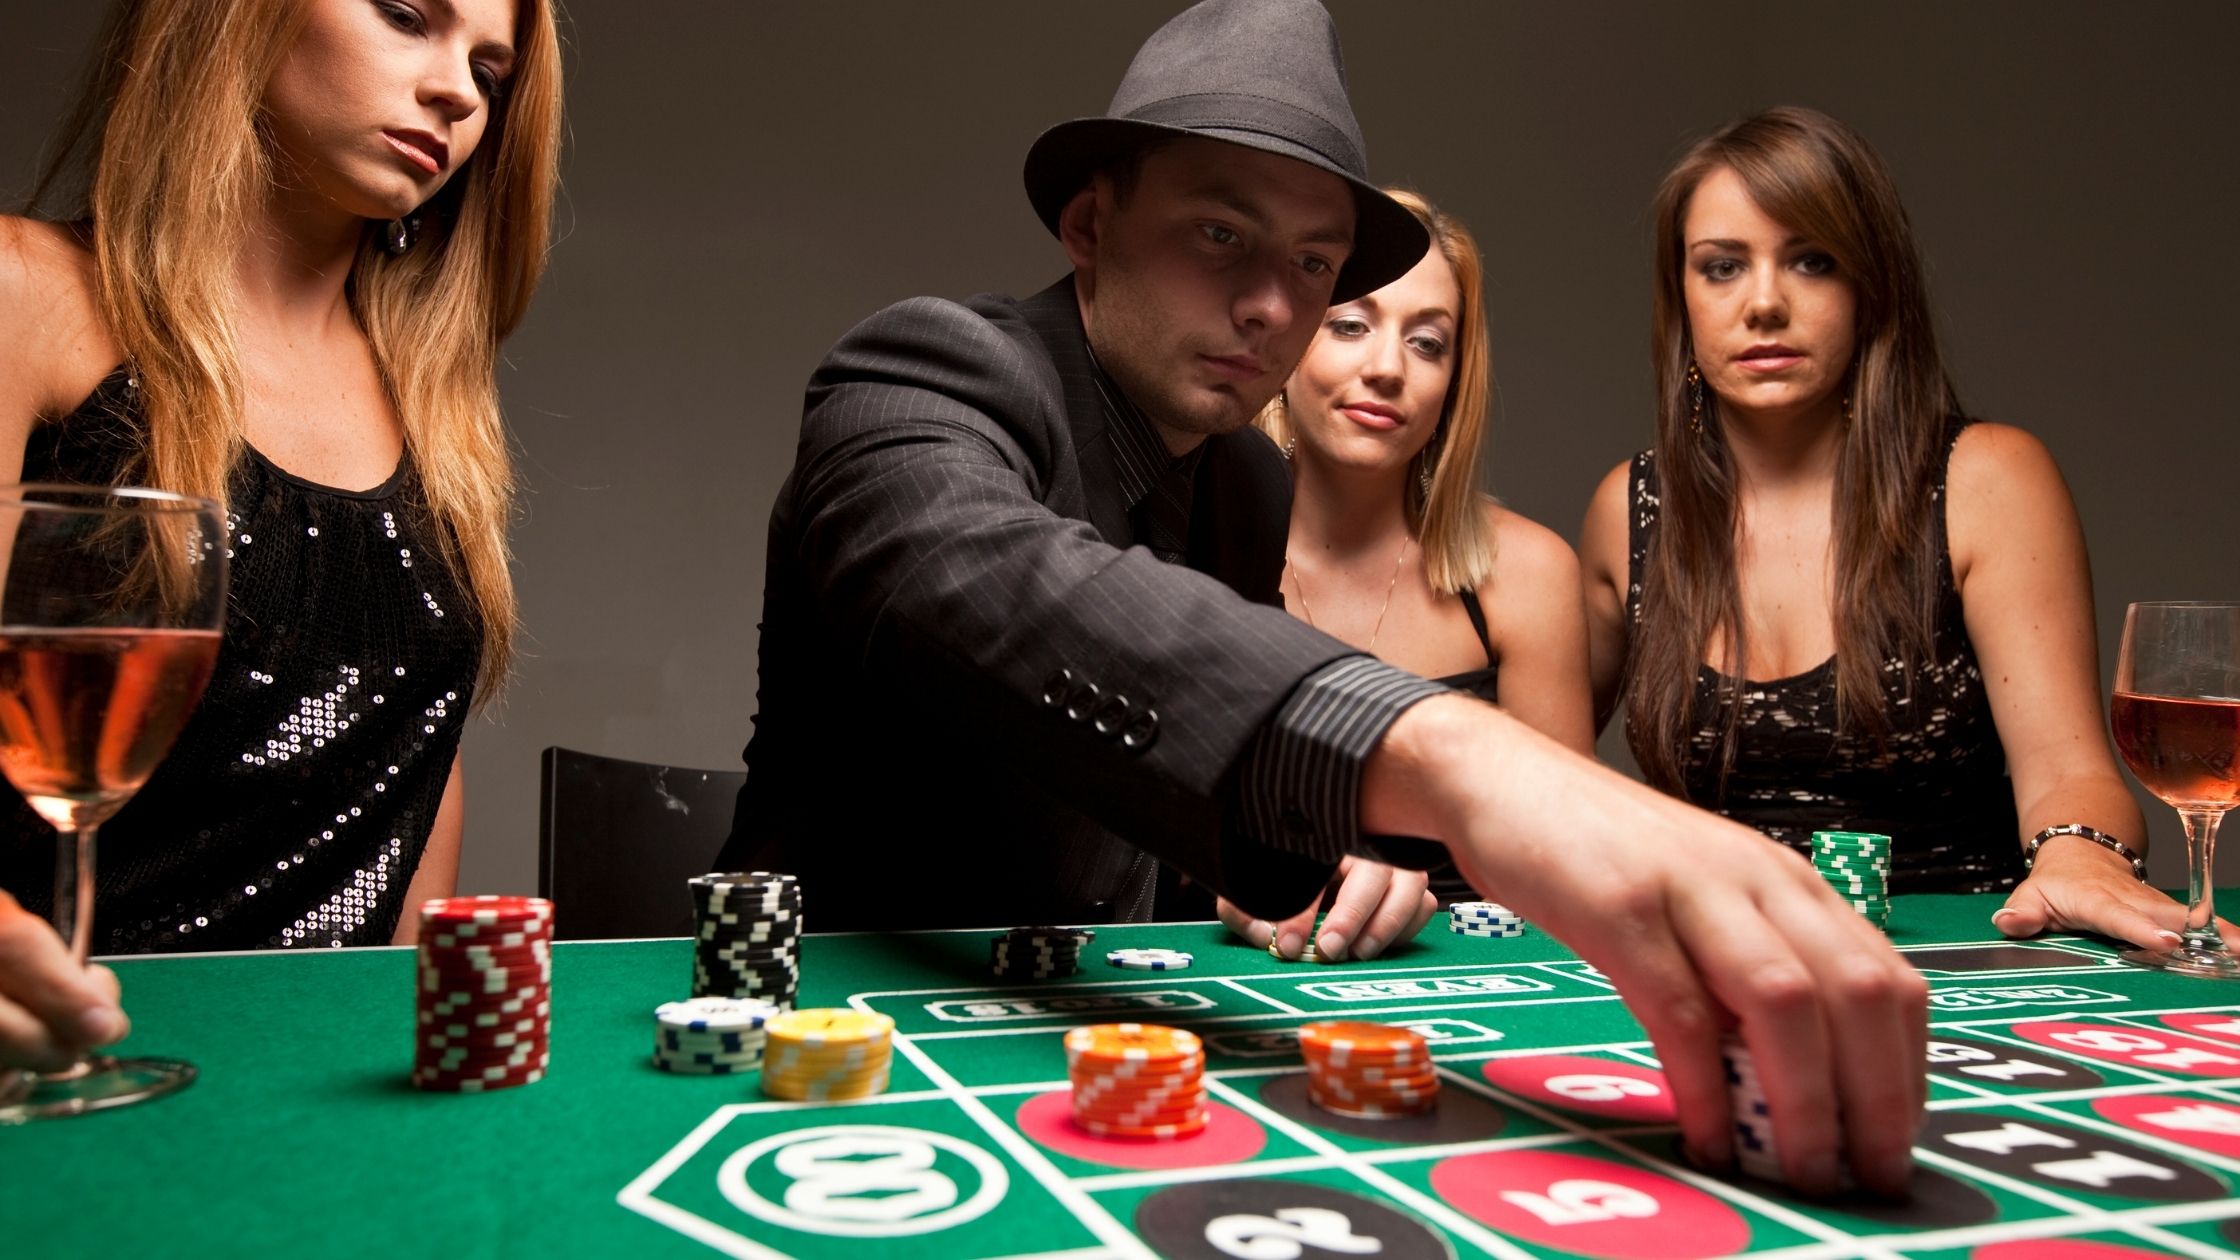 Игра покер на раздевание. Казино Покер. Фотосессия в казино. Девушка за покерным столом. Люди в казино.